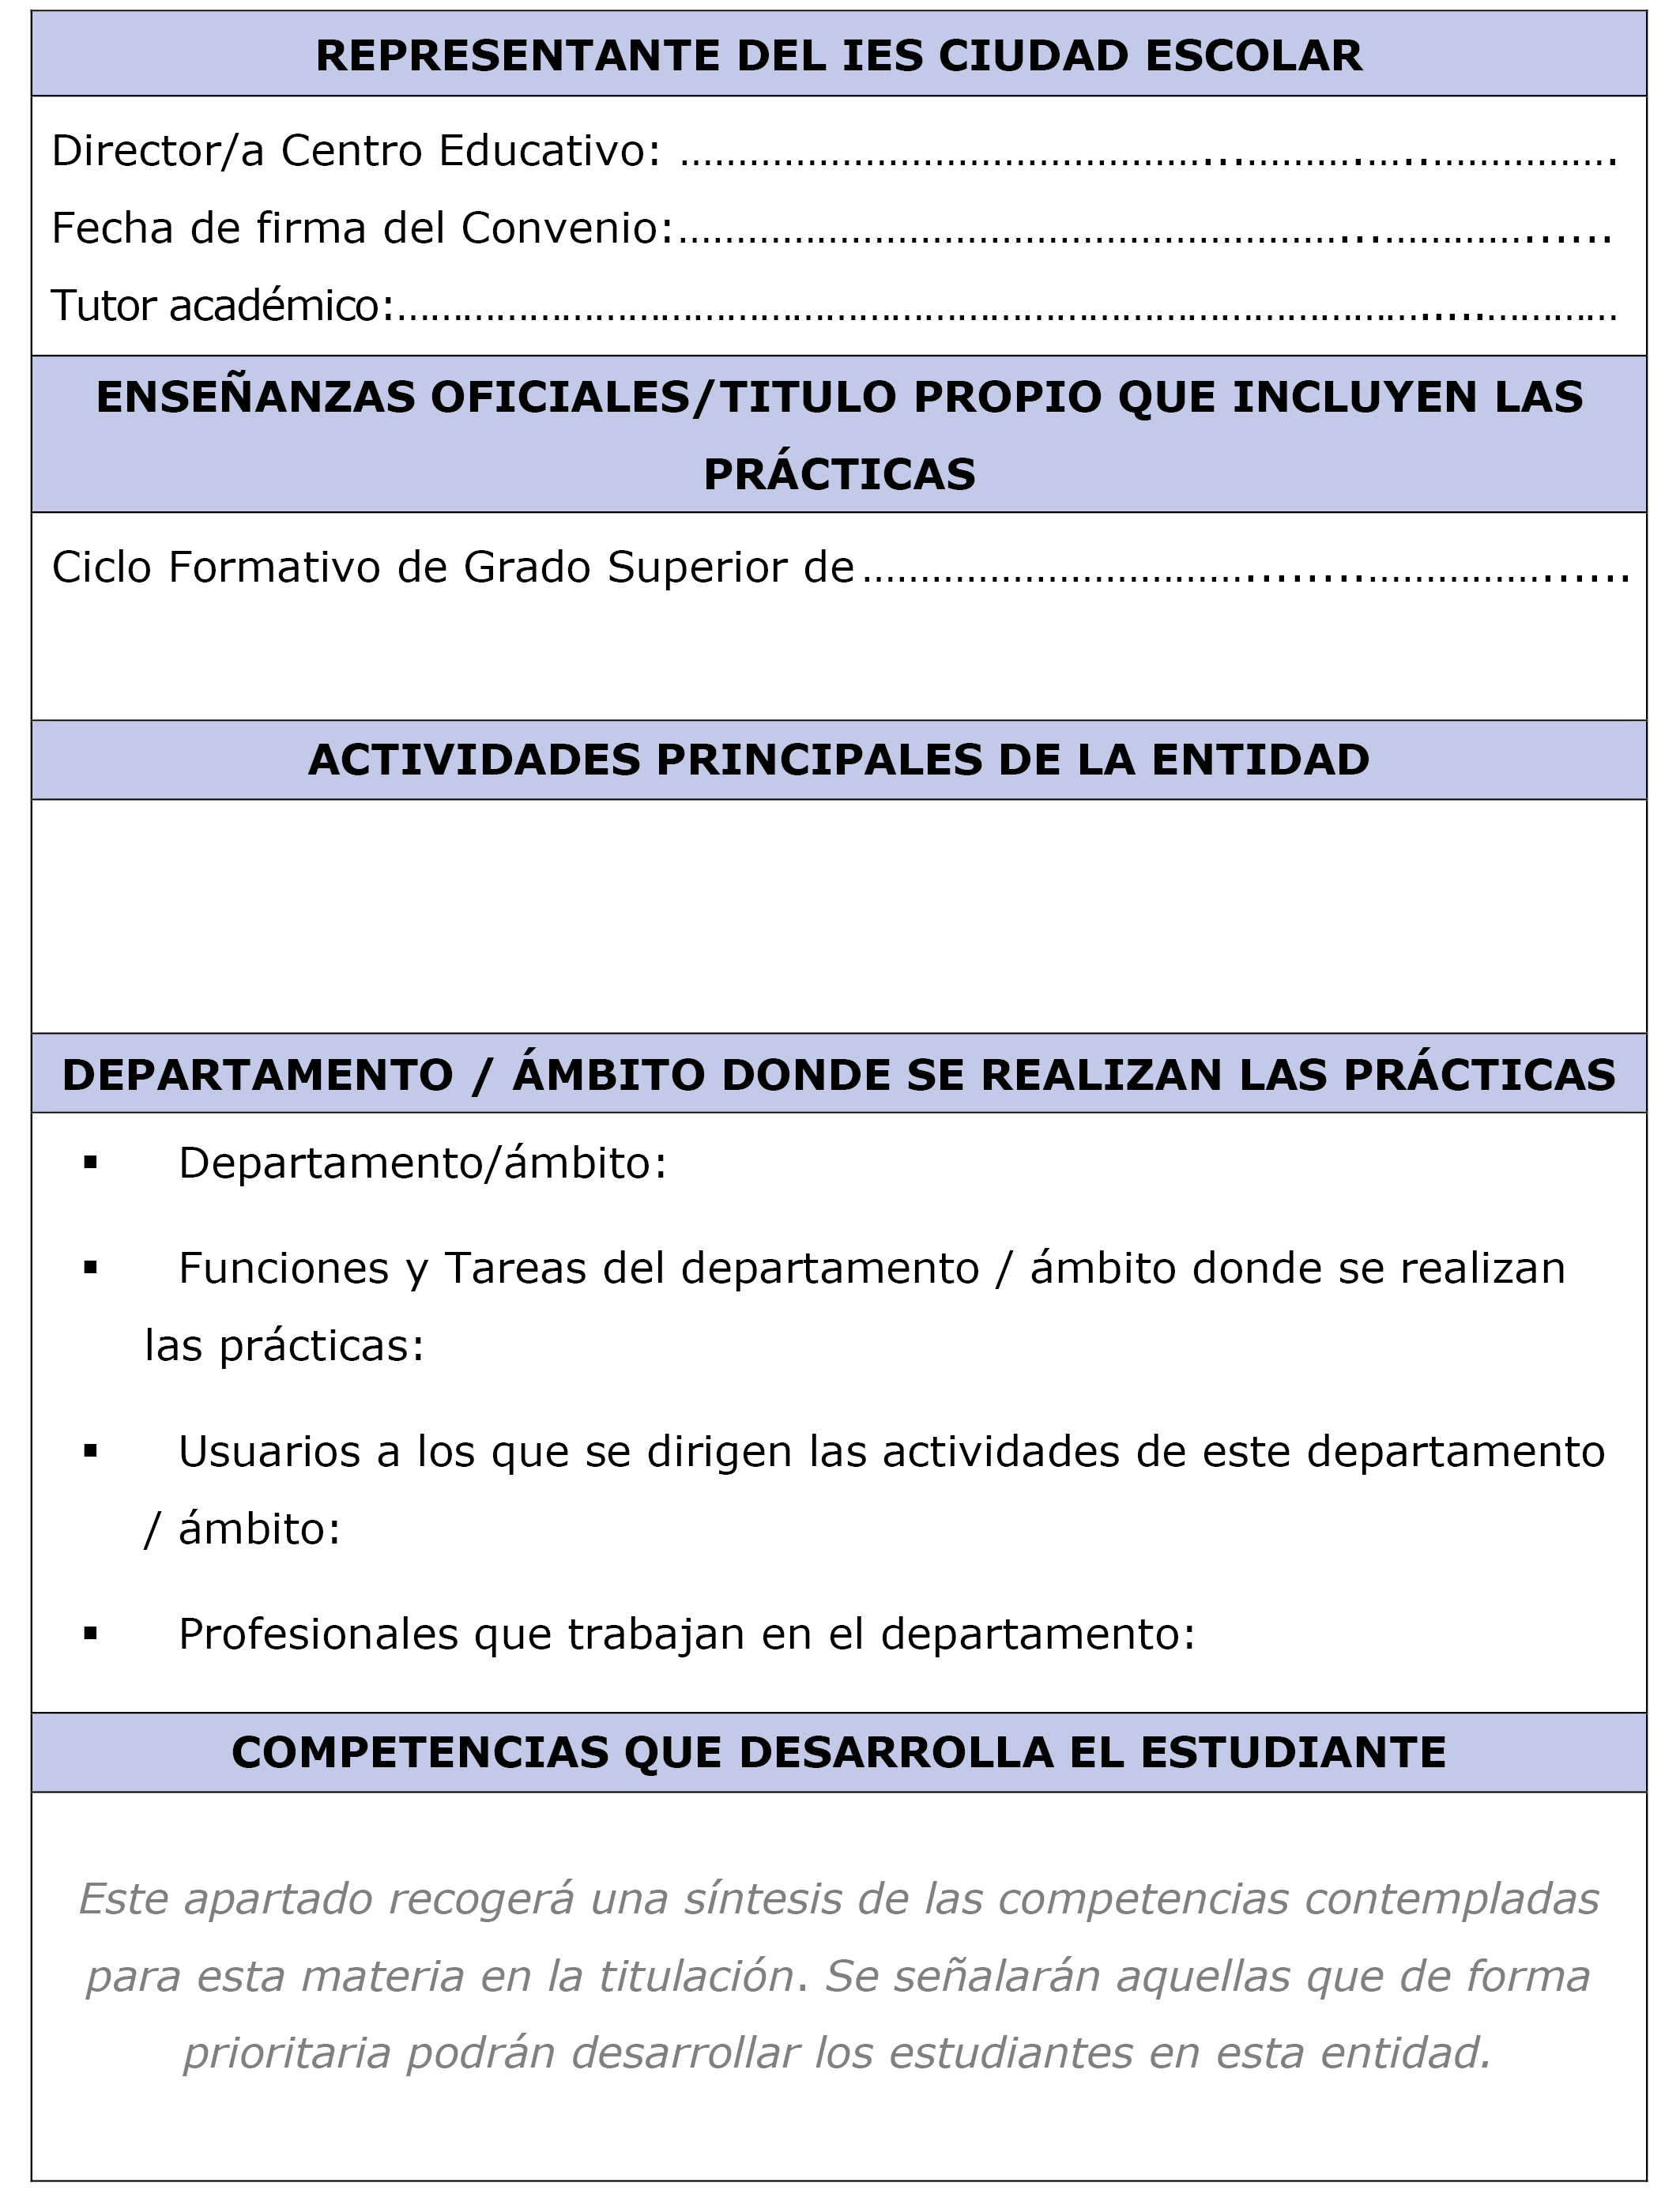 BOE.es - BOE-A-2020-1521 Resolución de 17 de enero de 2020, de la  Secretaría General Técnica, por la que se publica el Convenio entre el IES  Ciudad Escolar y la Dirección General de